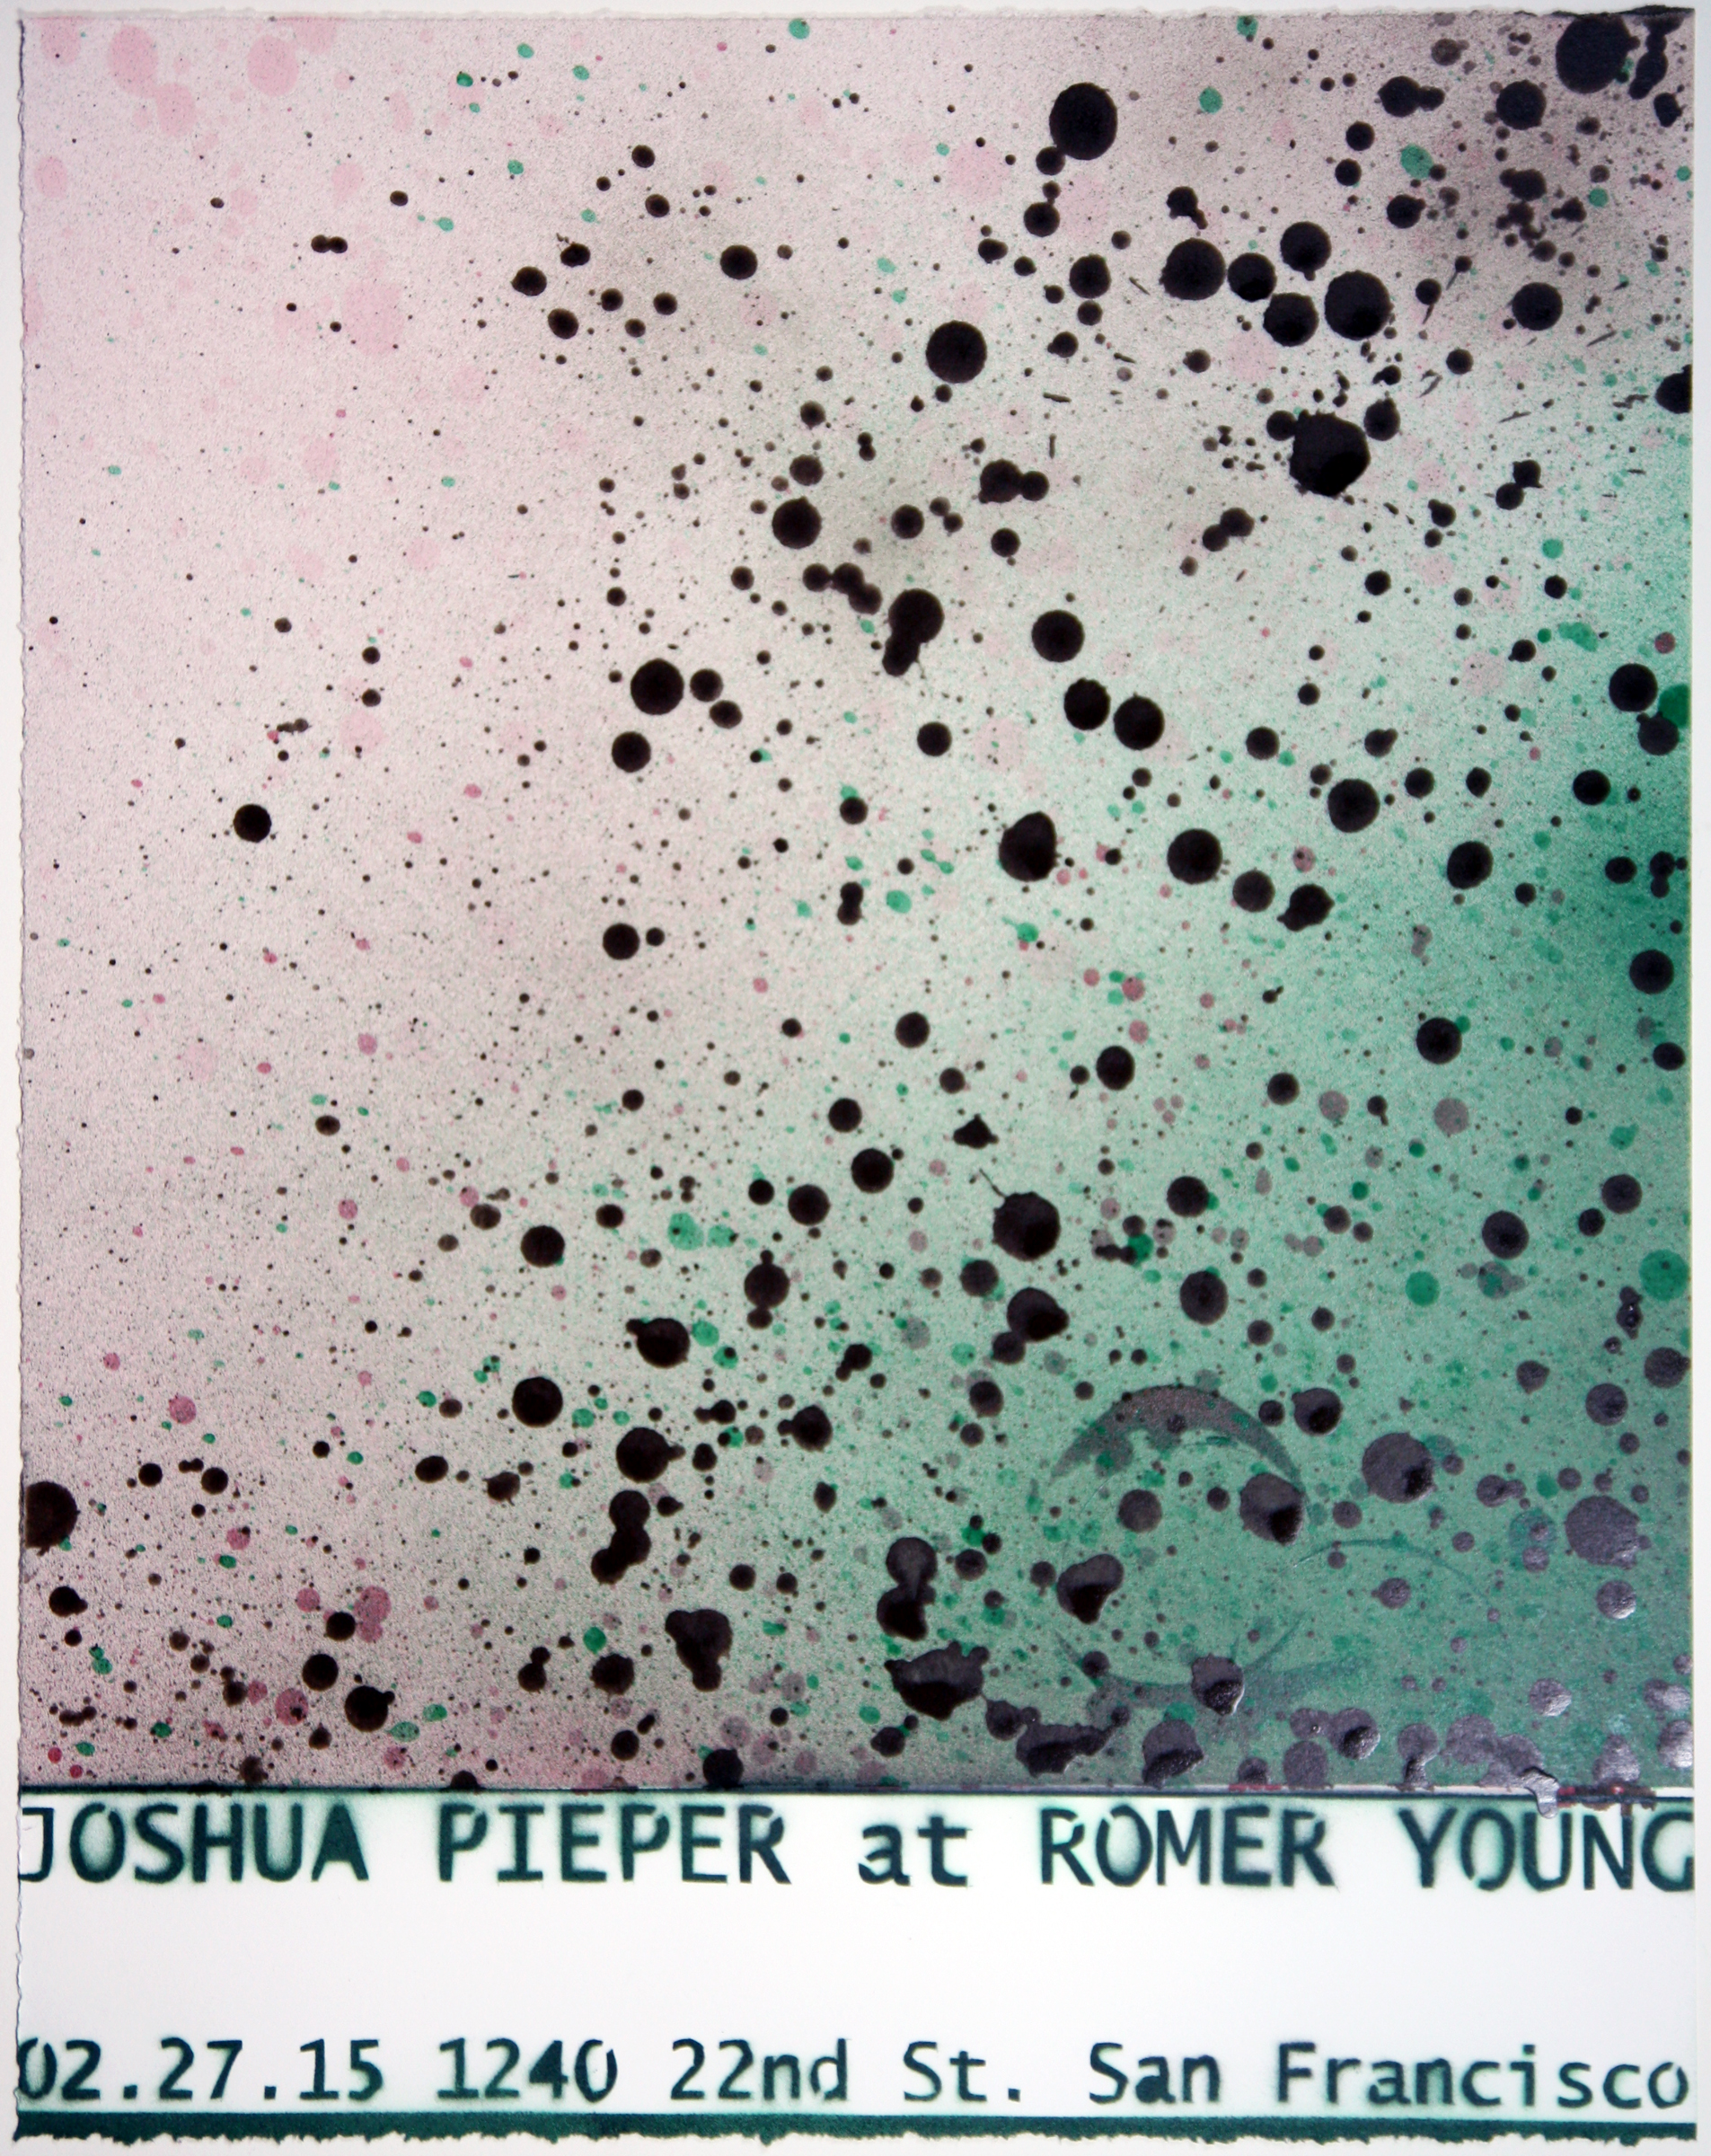   JOSHUA PIEPER   Poster 7 , 2015, spray enamel on cotton rag with frame, 21" x 17" 